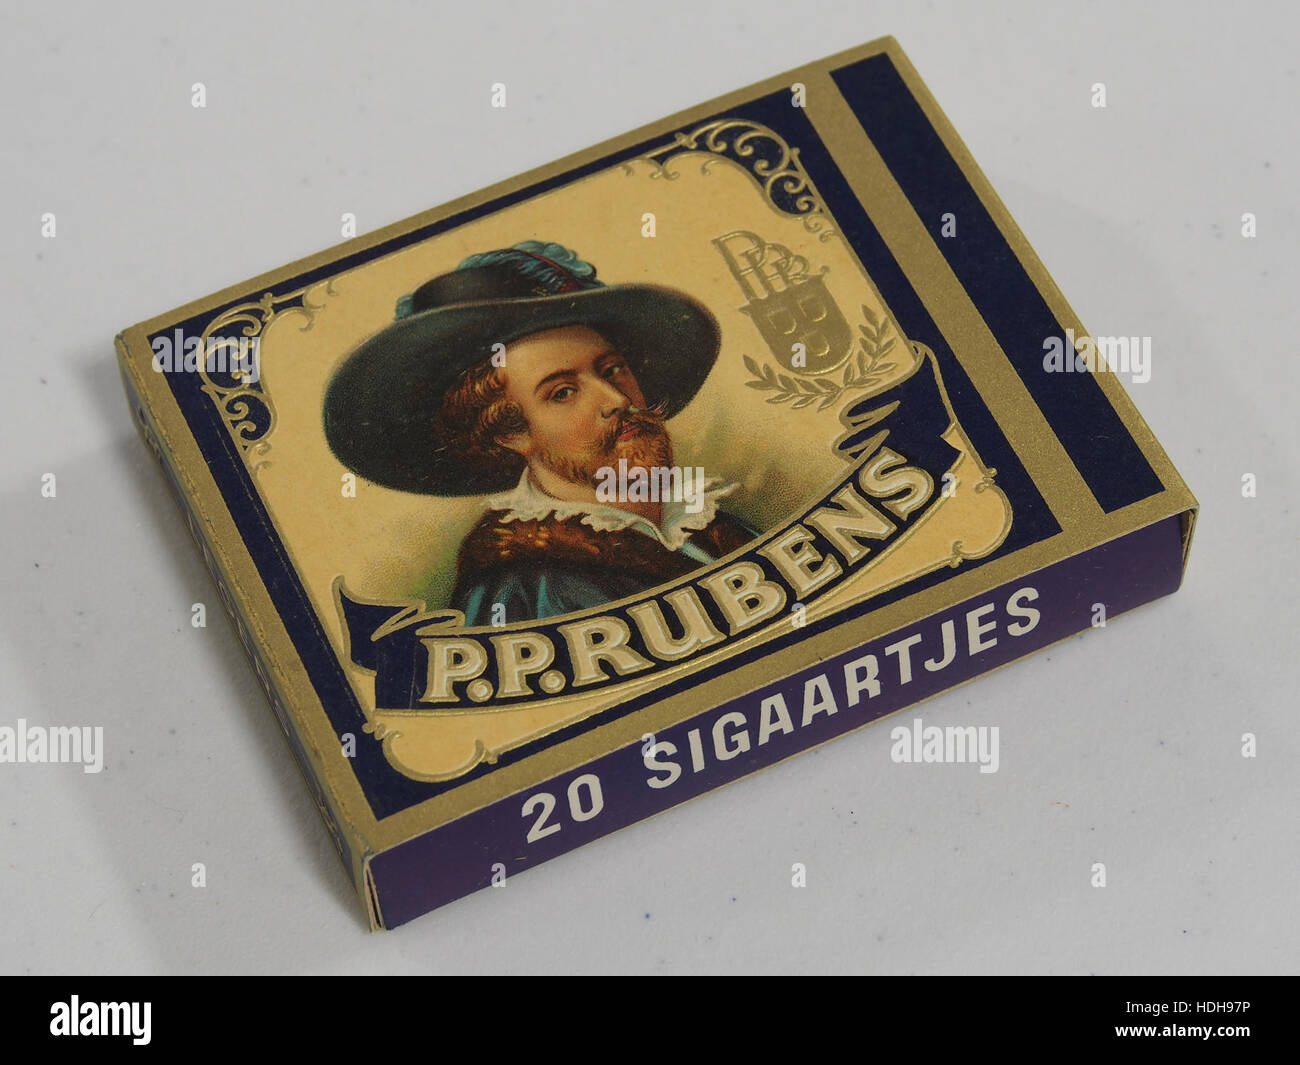 Rubens sigaartjes pak pic2 Banque D'Images